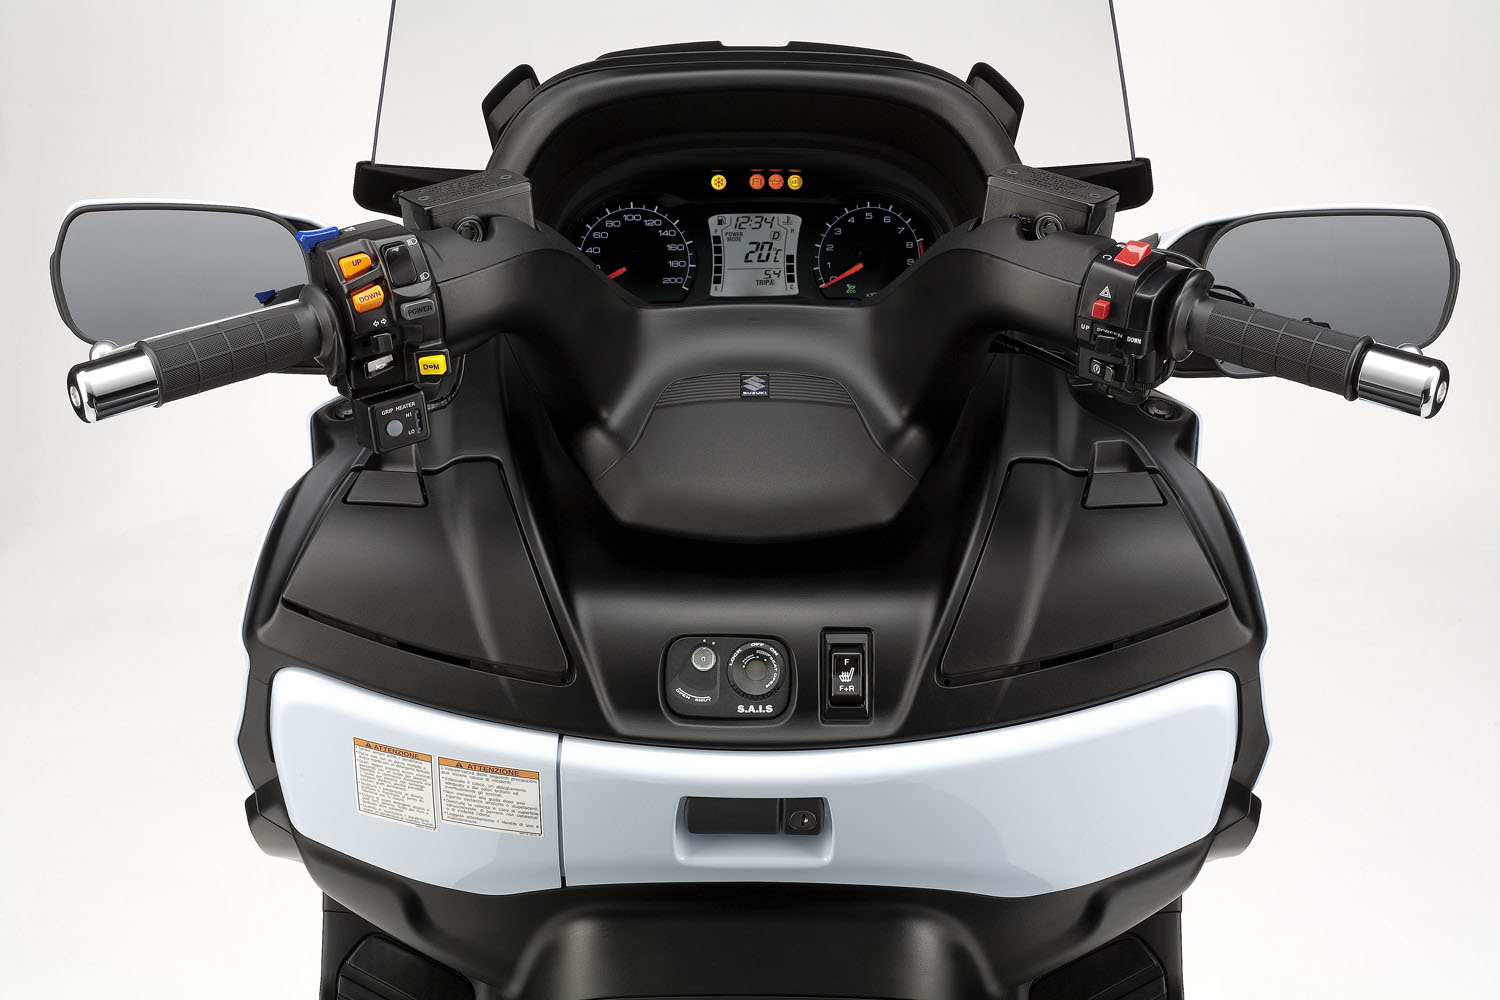 2013 Suzuki Burgman 650 Executive ABS review